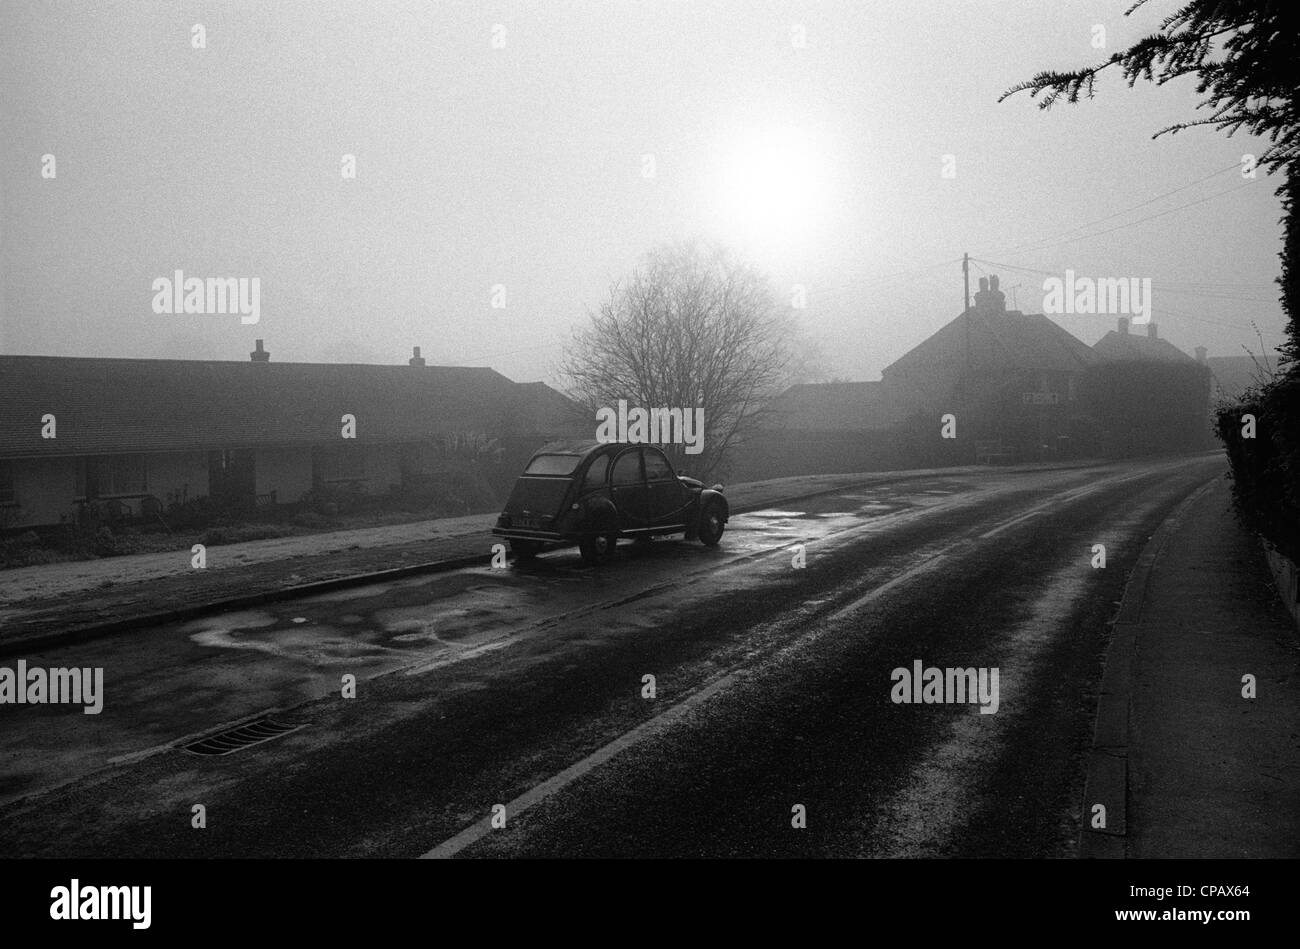 A Citroen 2CV on a cold morning in an English village Stock Photo